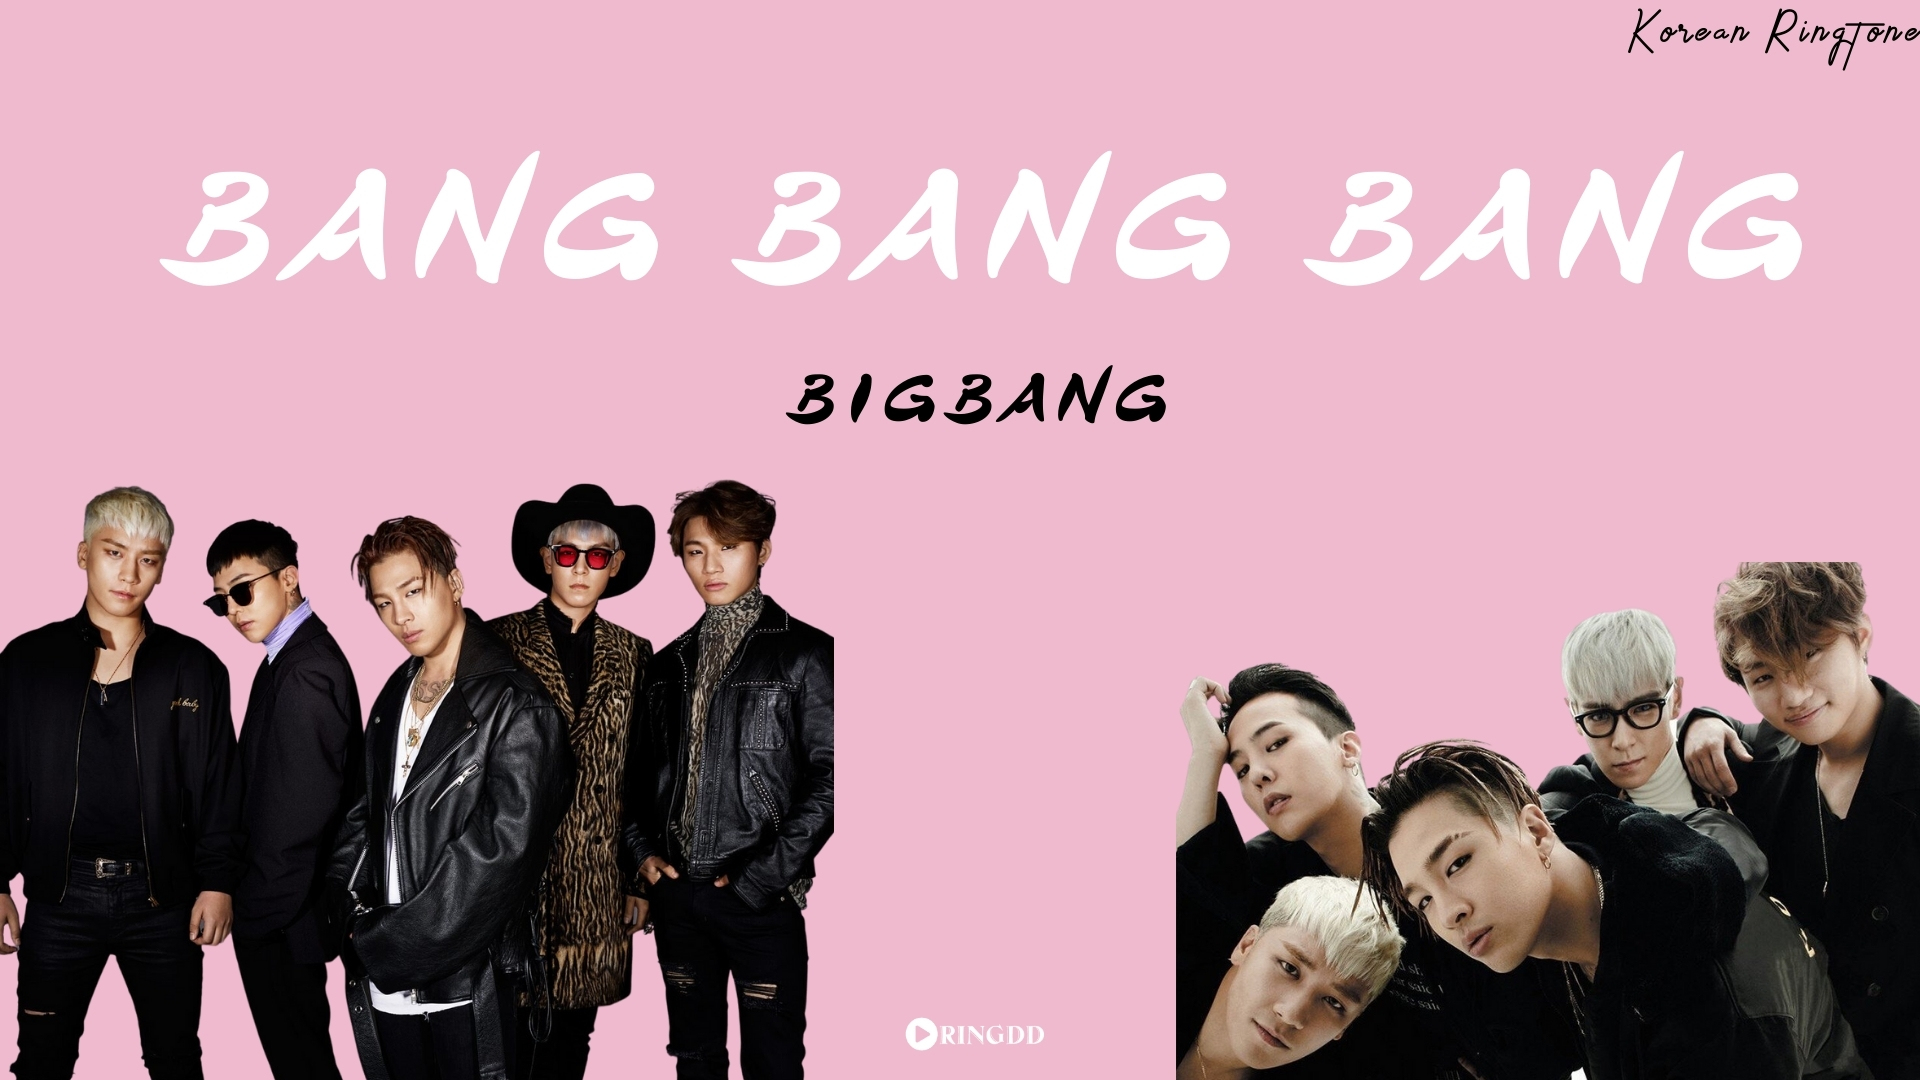 Bang. Чёрная футболка с Bang Bang big Bang. Чёрная футболка с надписью Bang Bang big Bang.